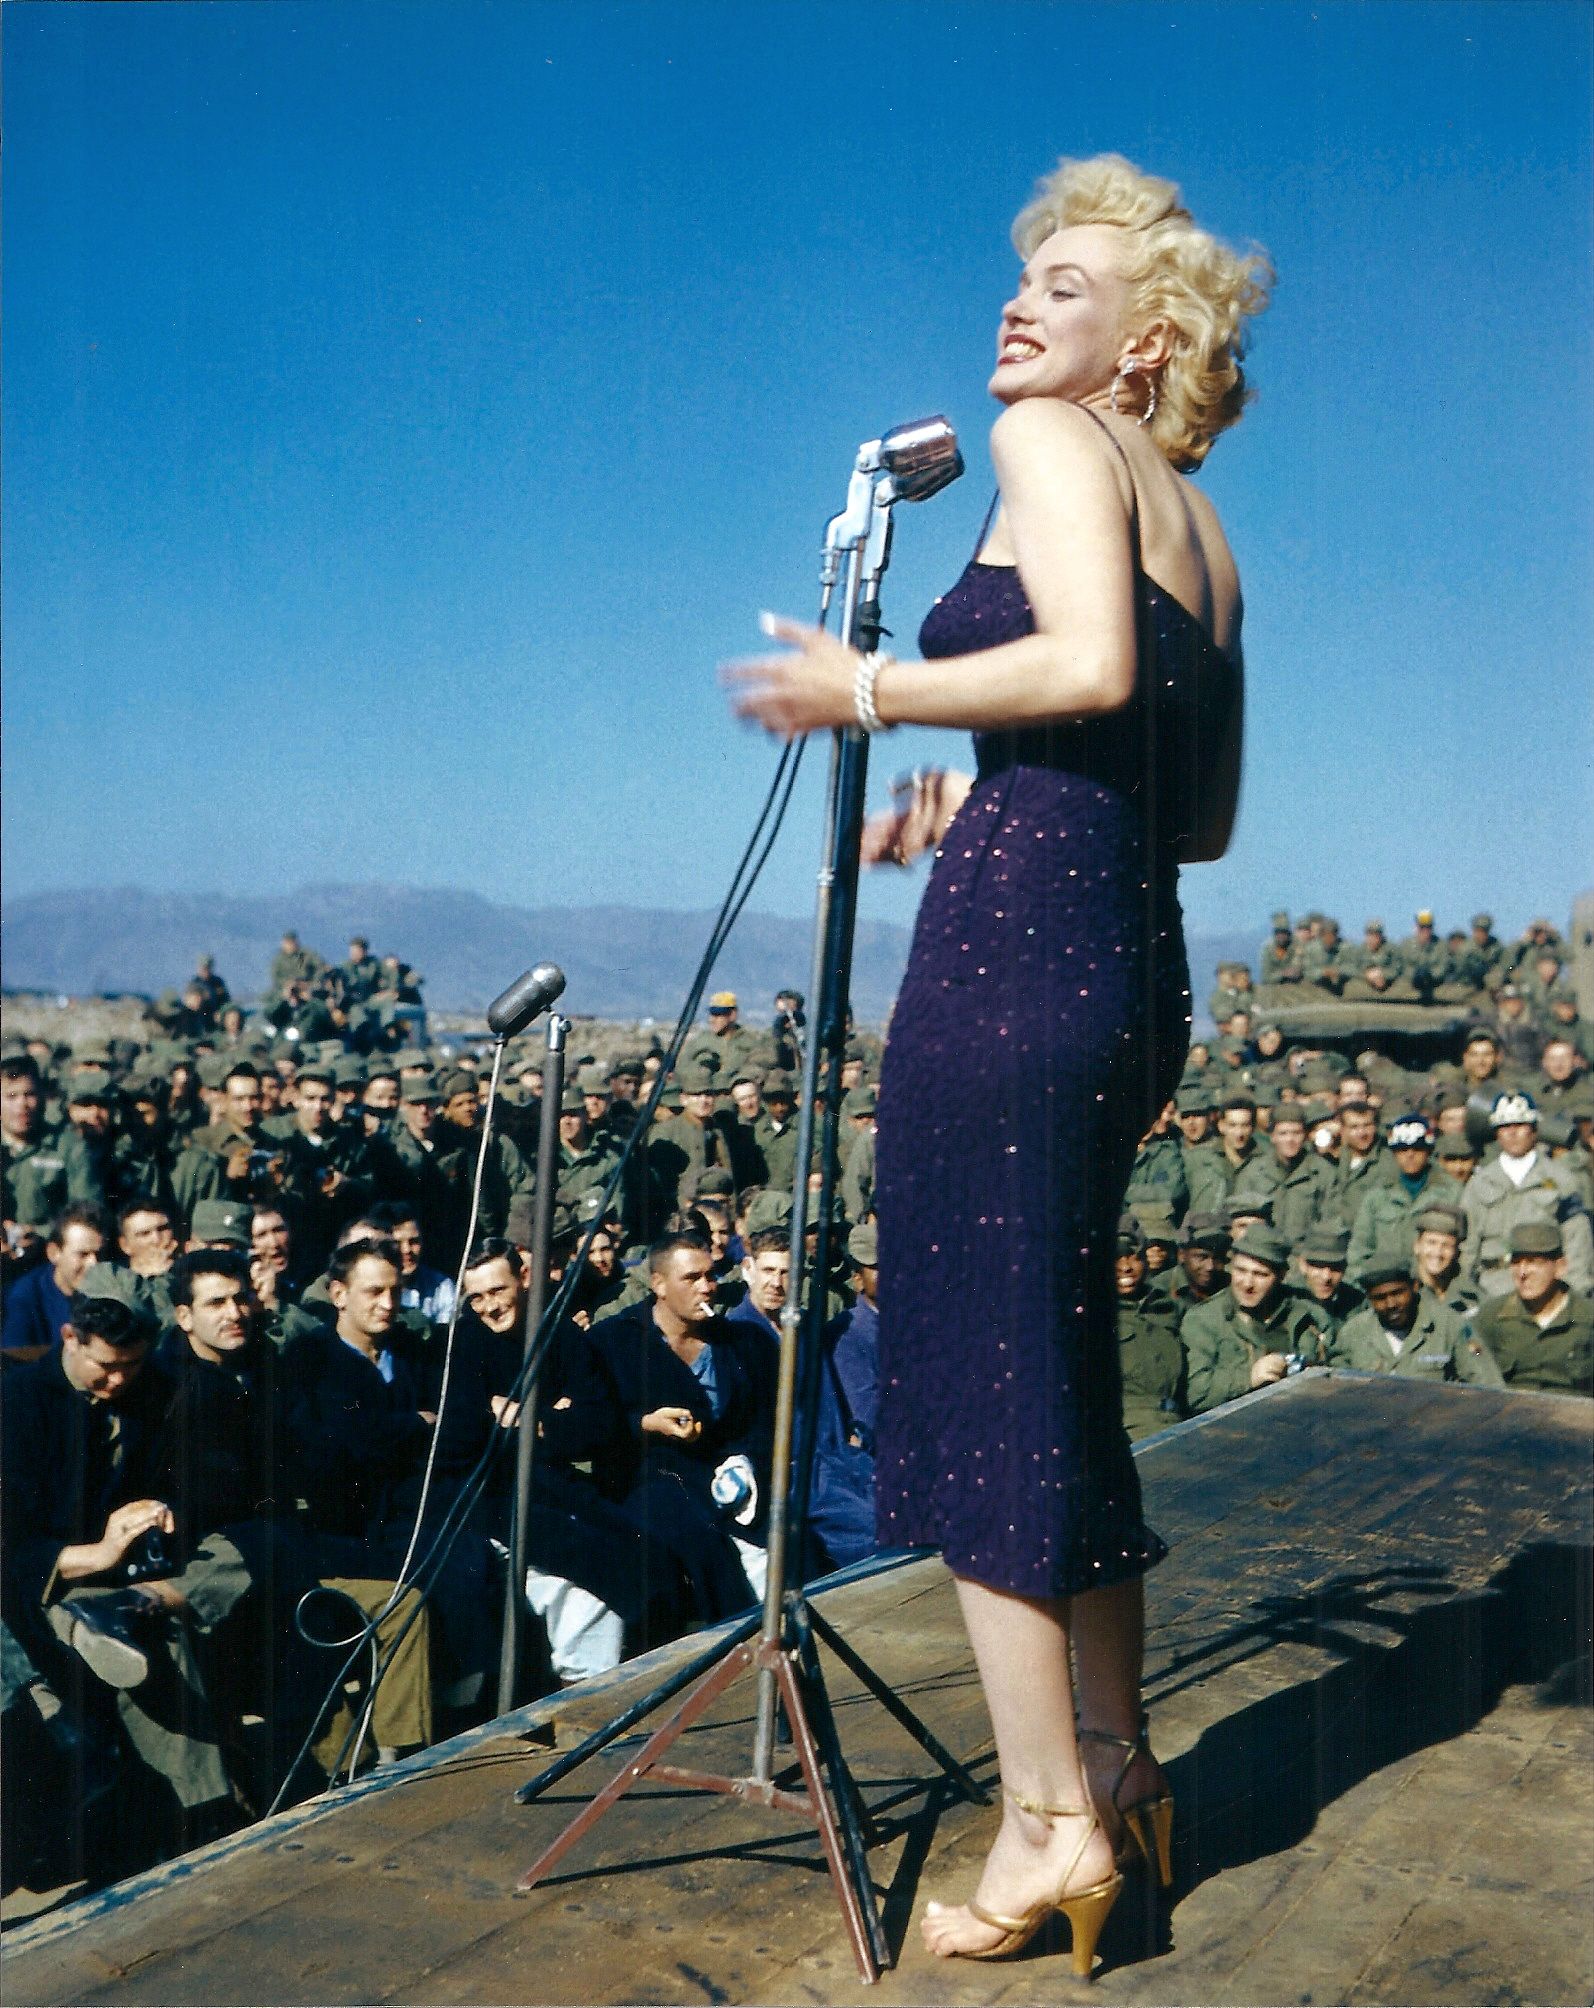 exposition | Marilyn Monroe, la donna oltre il mito - immagine 4